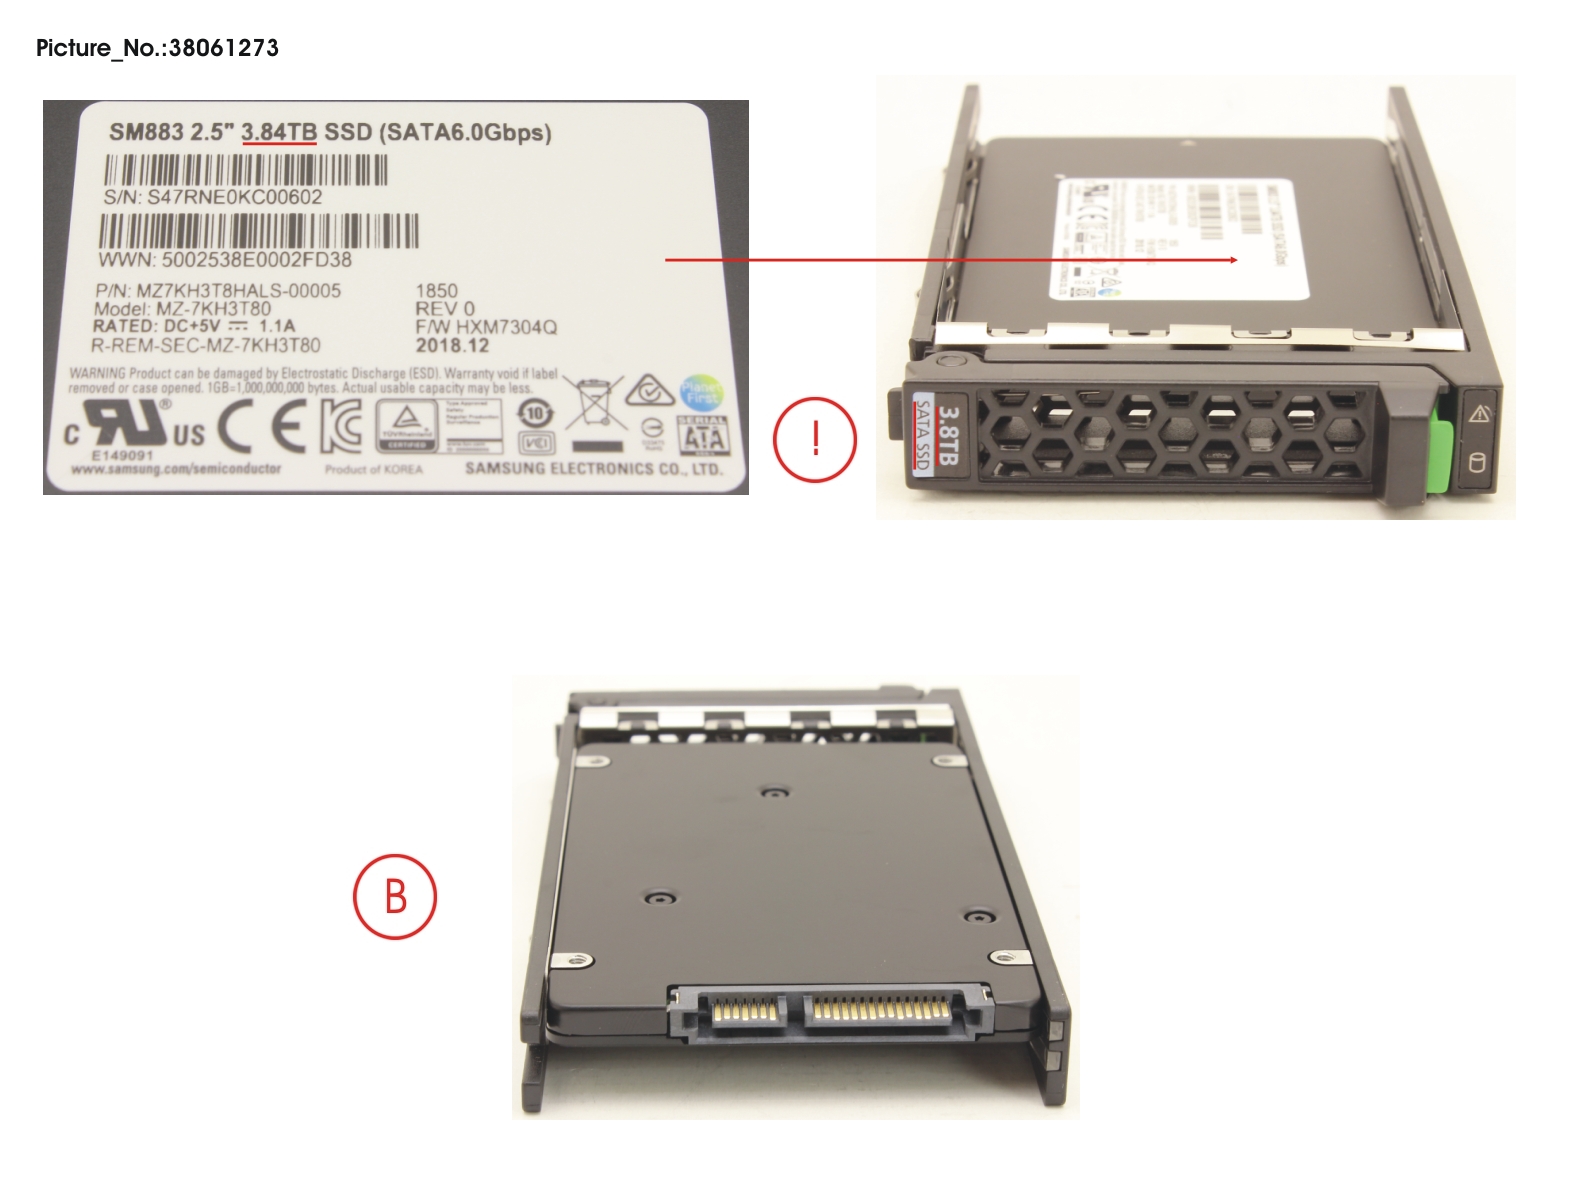 SSD SATA 6G 3.84TB MIXED-USE 2.5 H-P EP